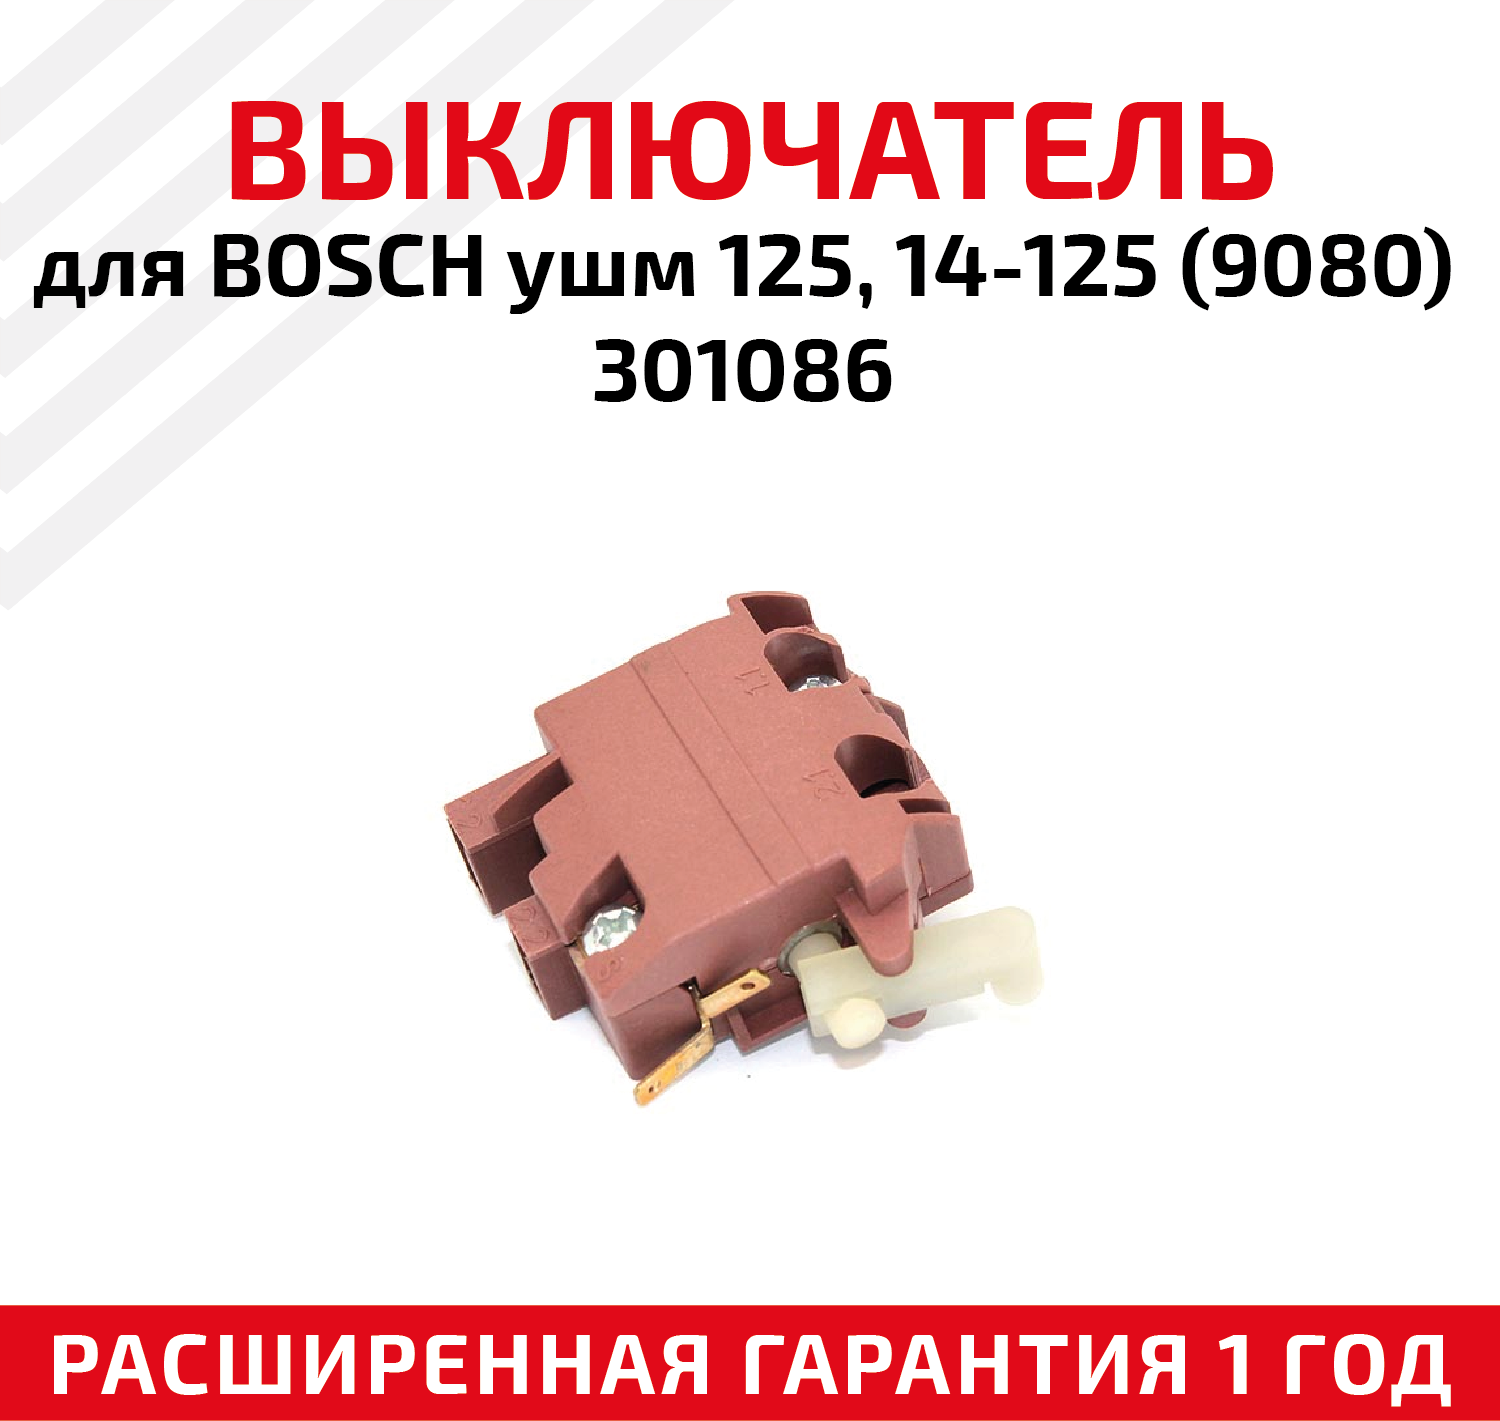 Выключатель для для электроинструмента Bosch ушм 125, 14-125 (9080), 301086